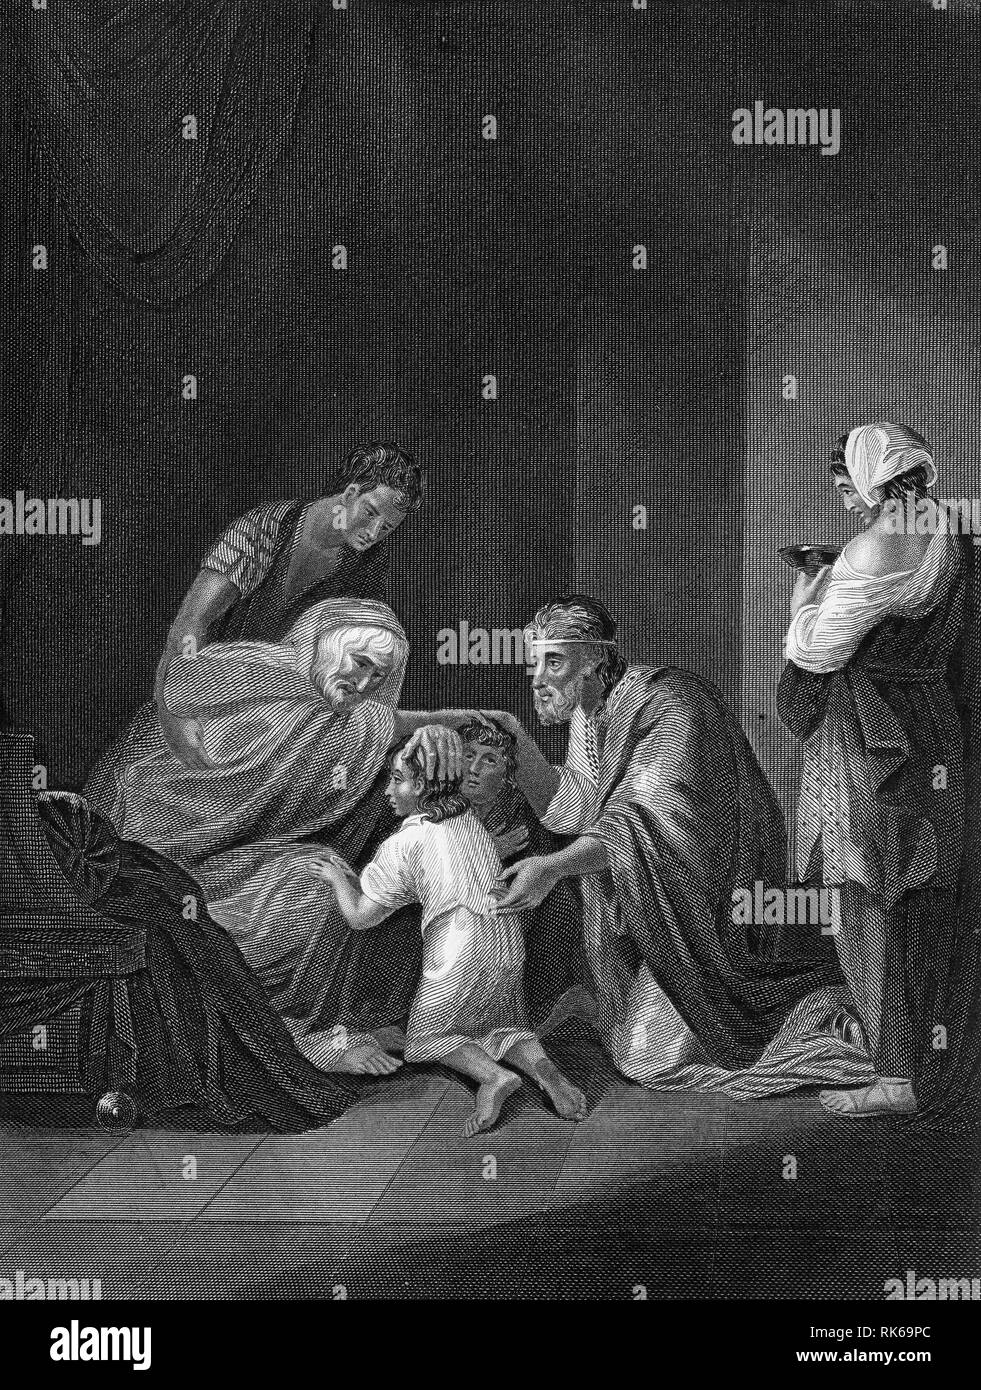 Kupferstich von Jakob segnet die Kinder Josephs, Manasse und Ephraim. Aus der Bibel Self-Interpeting, vielleicht die 1843 Edition. Stockfoto